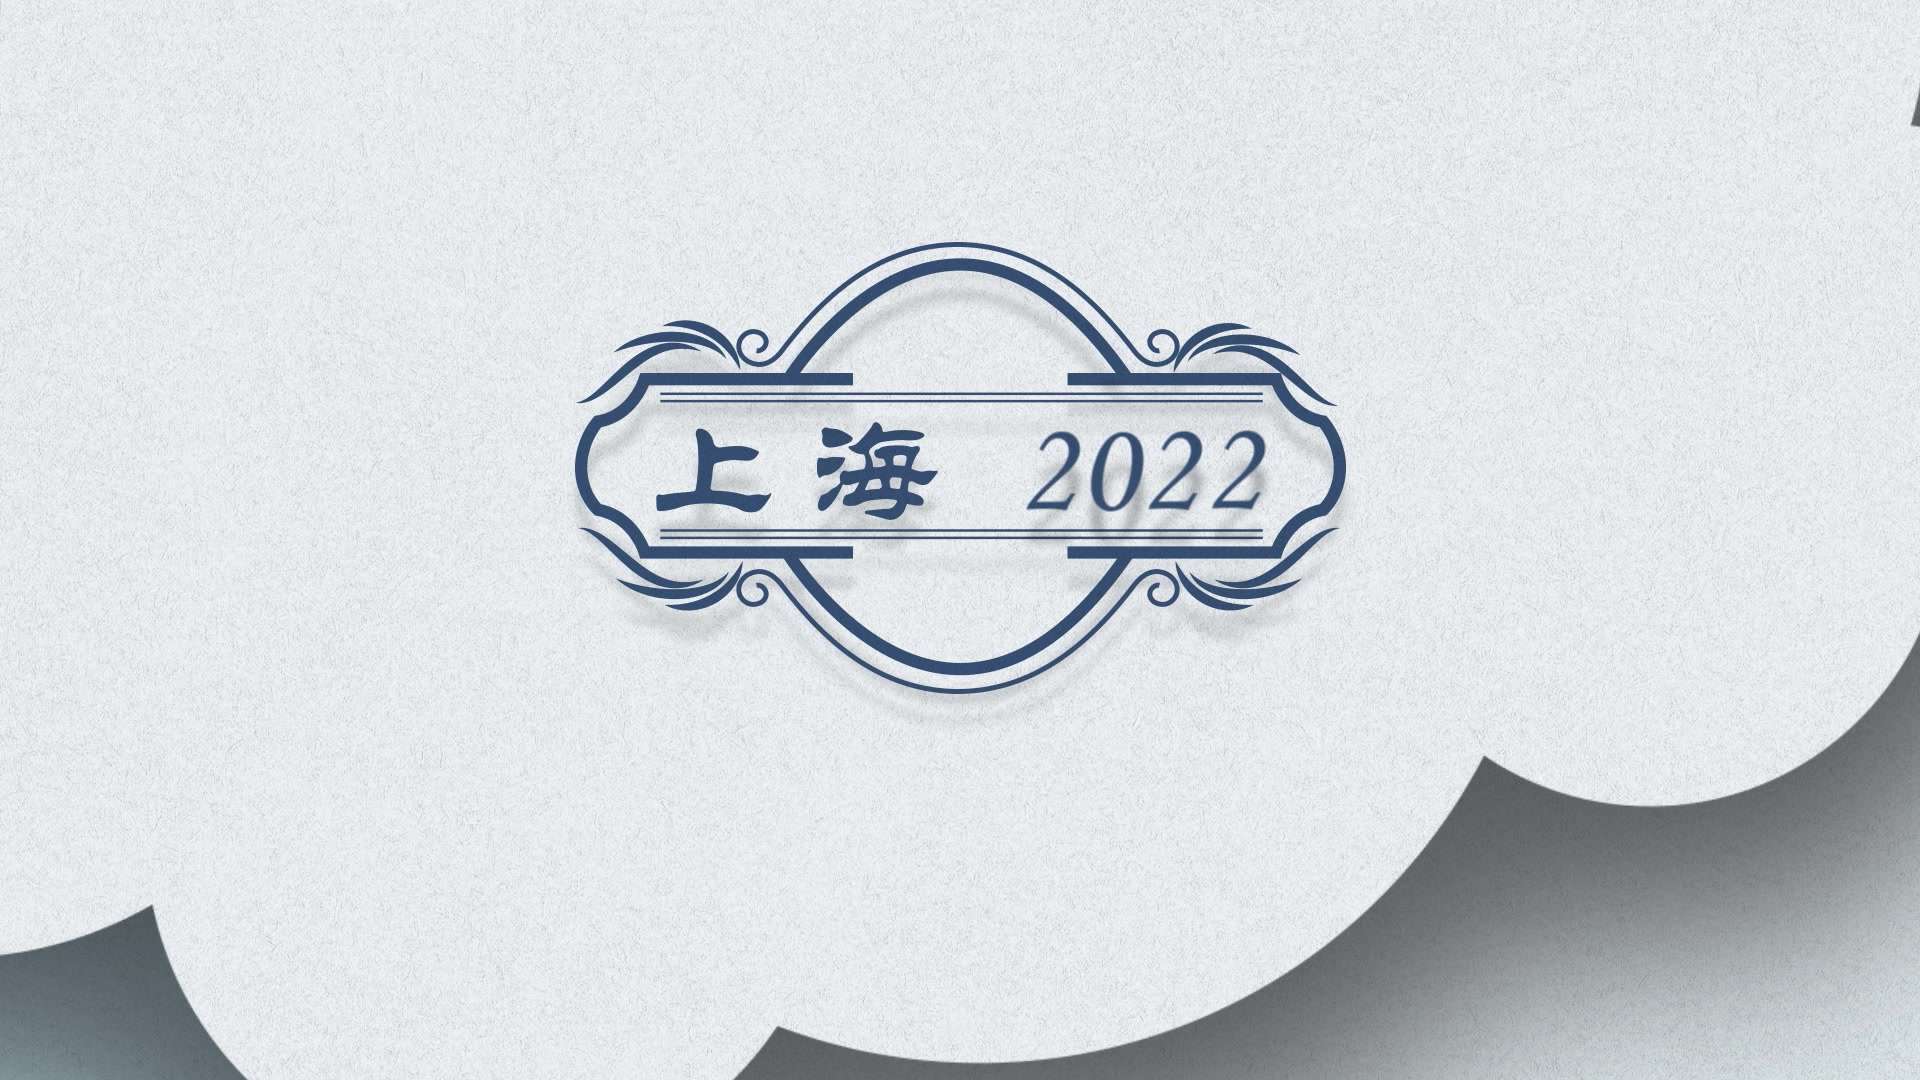 【中国东方航空X上海机场集团】2022北外滩国际航空论坛 创意篇